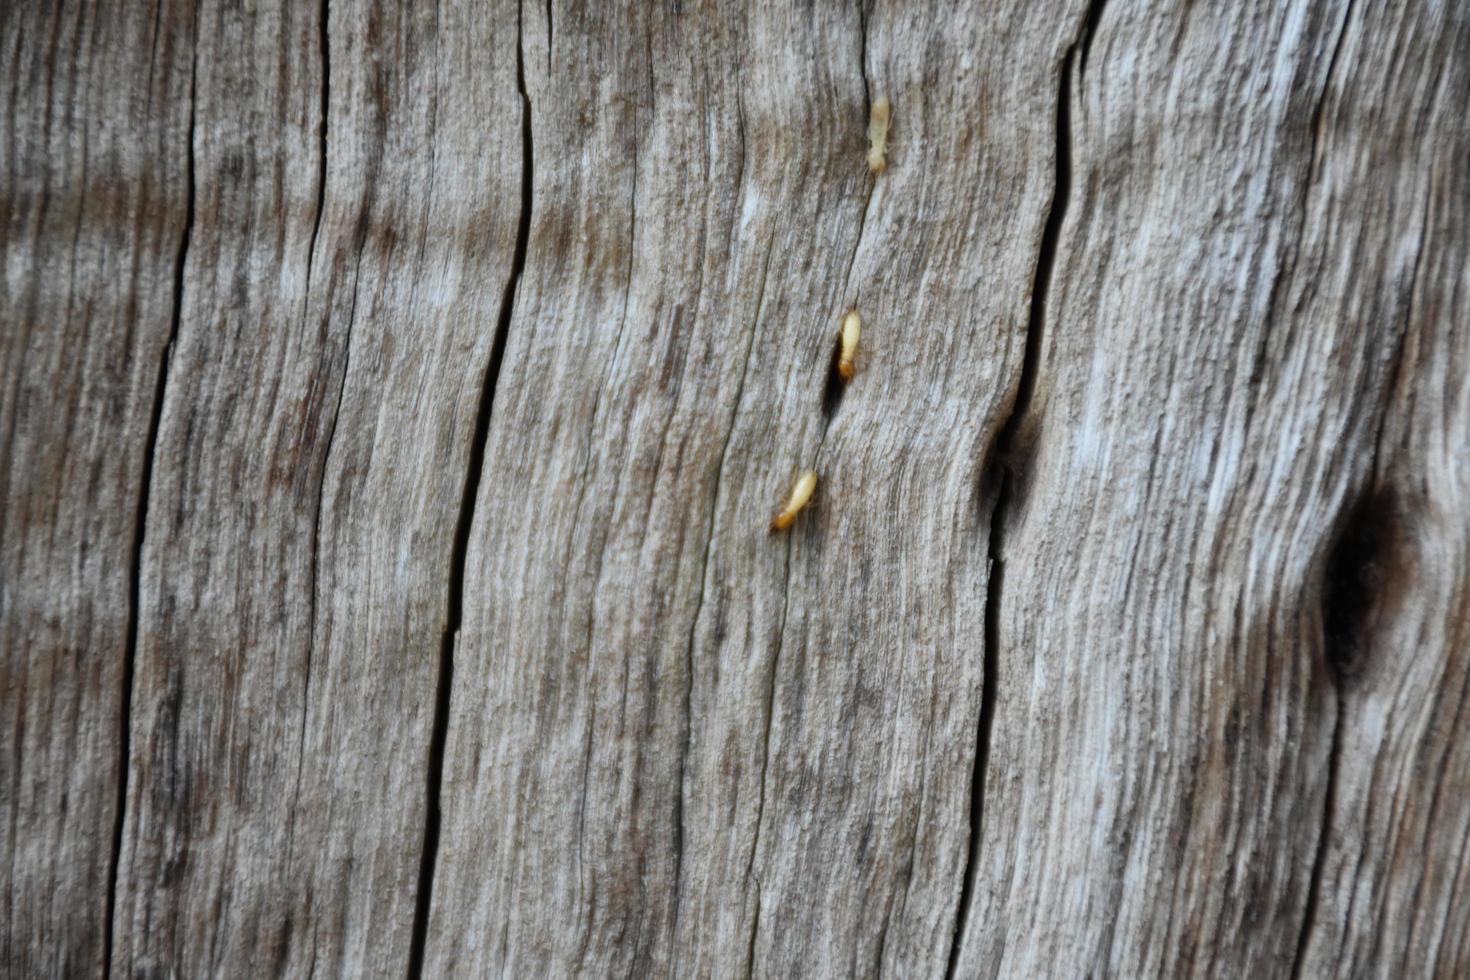 la surface avant de l'hémisphère en bois a été exposée au soleil et altérée pour causer de la moisissure sur le bois. photo